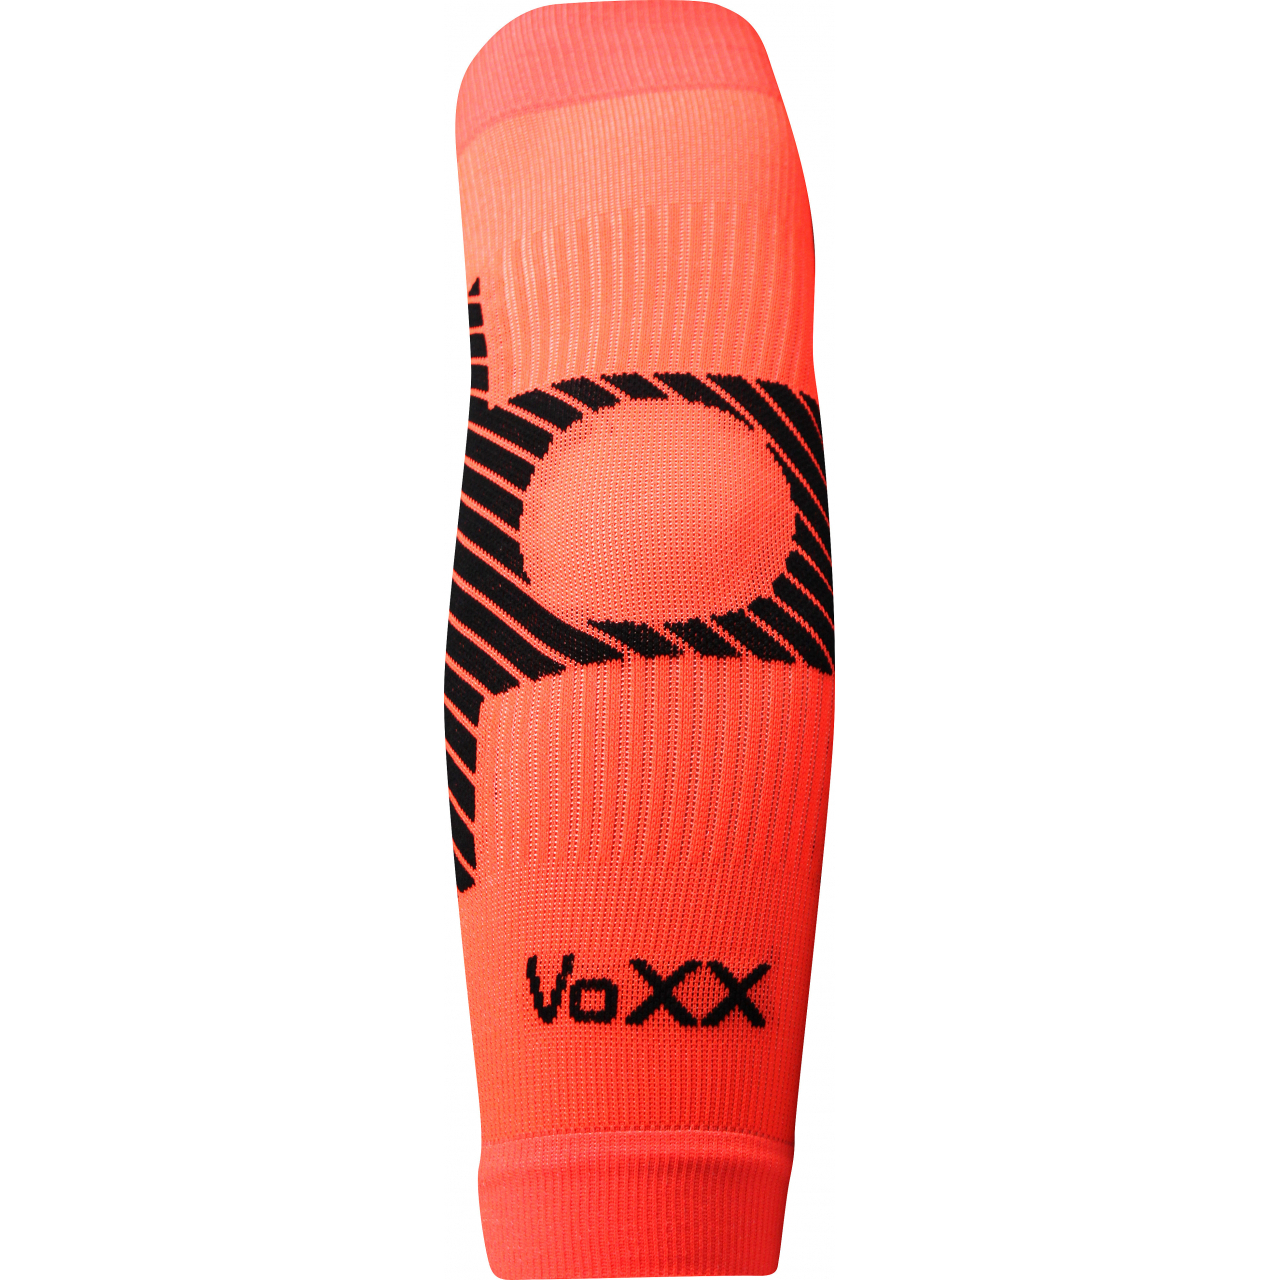 Návlek kompresní Voxx Protect loket - oranžový svítící, S/M